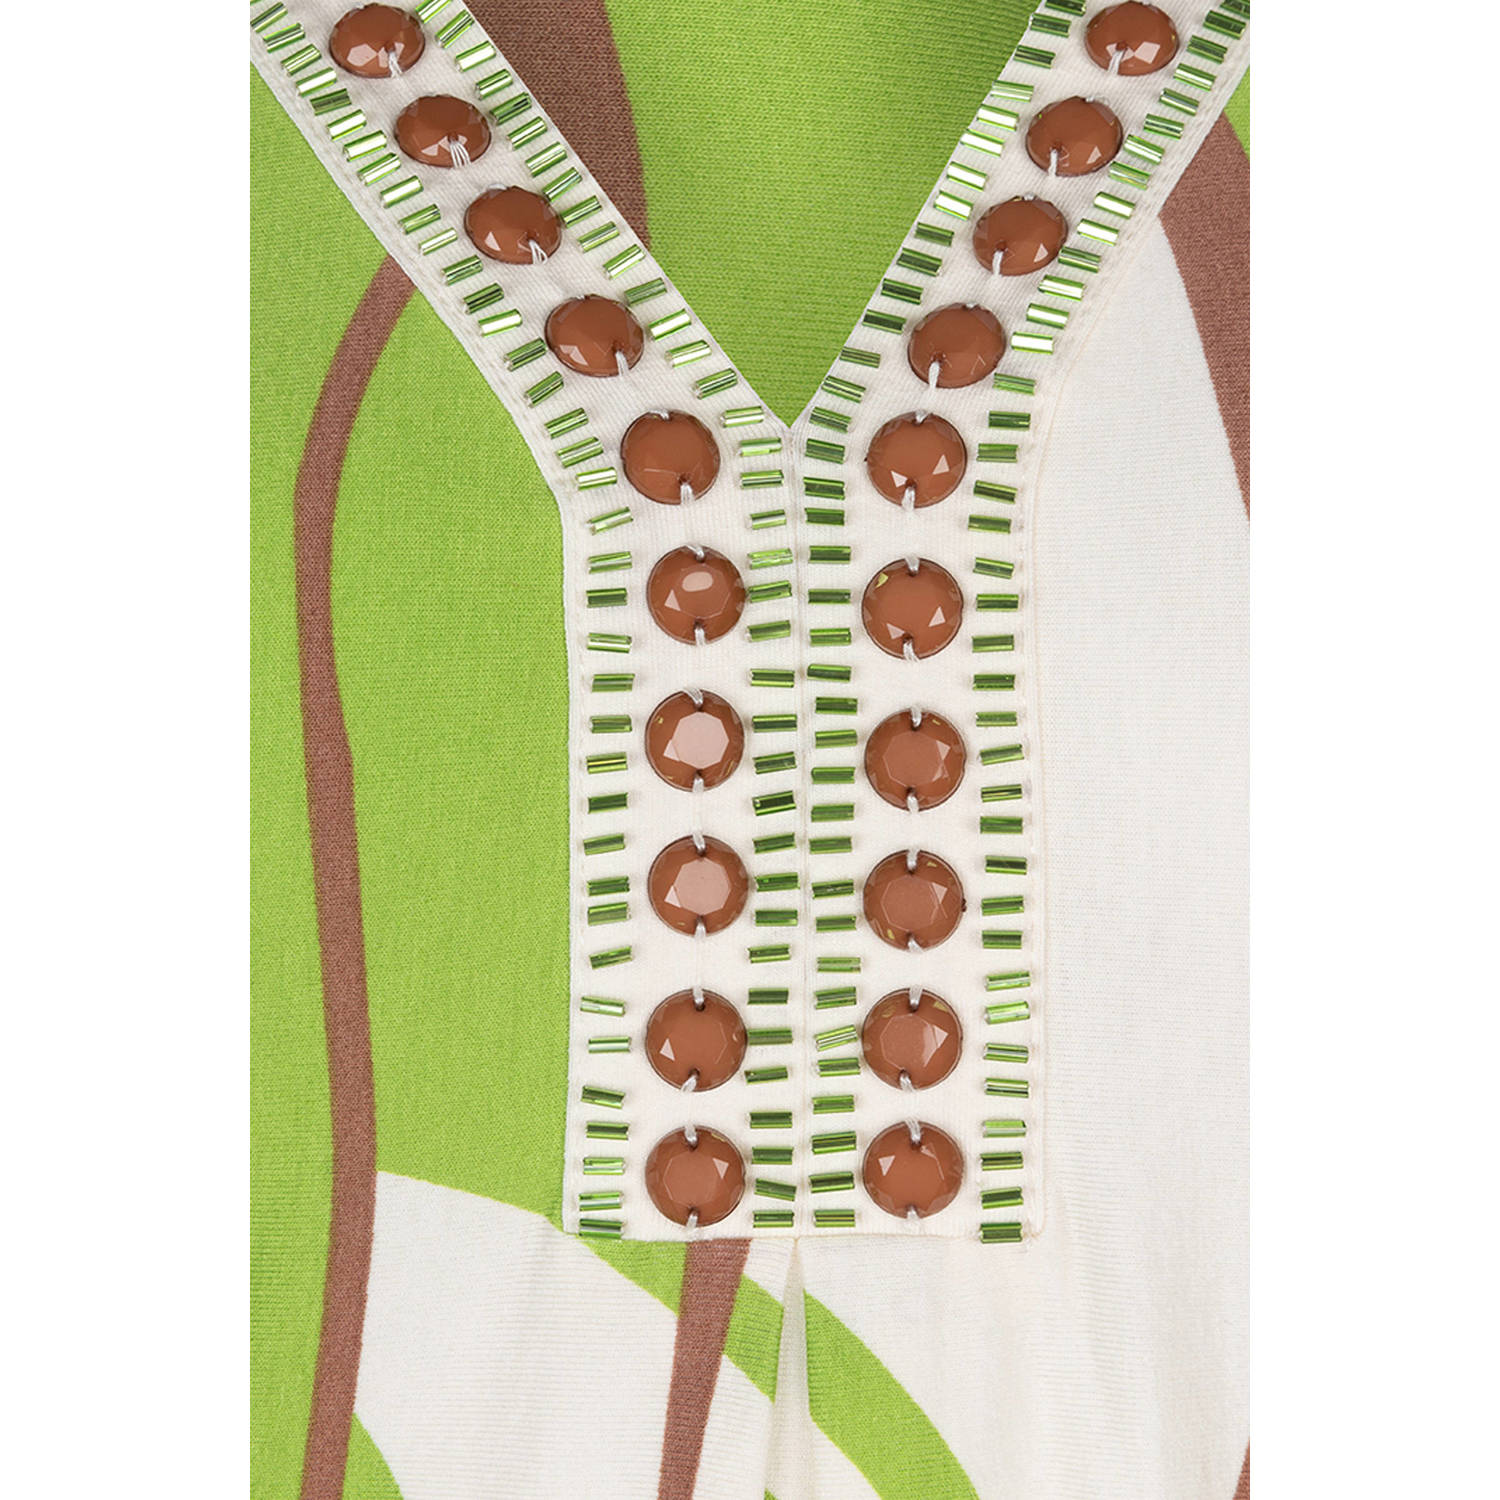 Esqualo jurk met all over print en kraaltjes groen ecru bruin